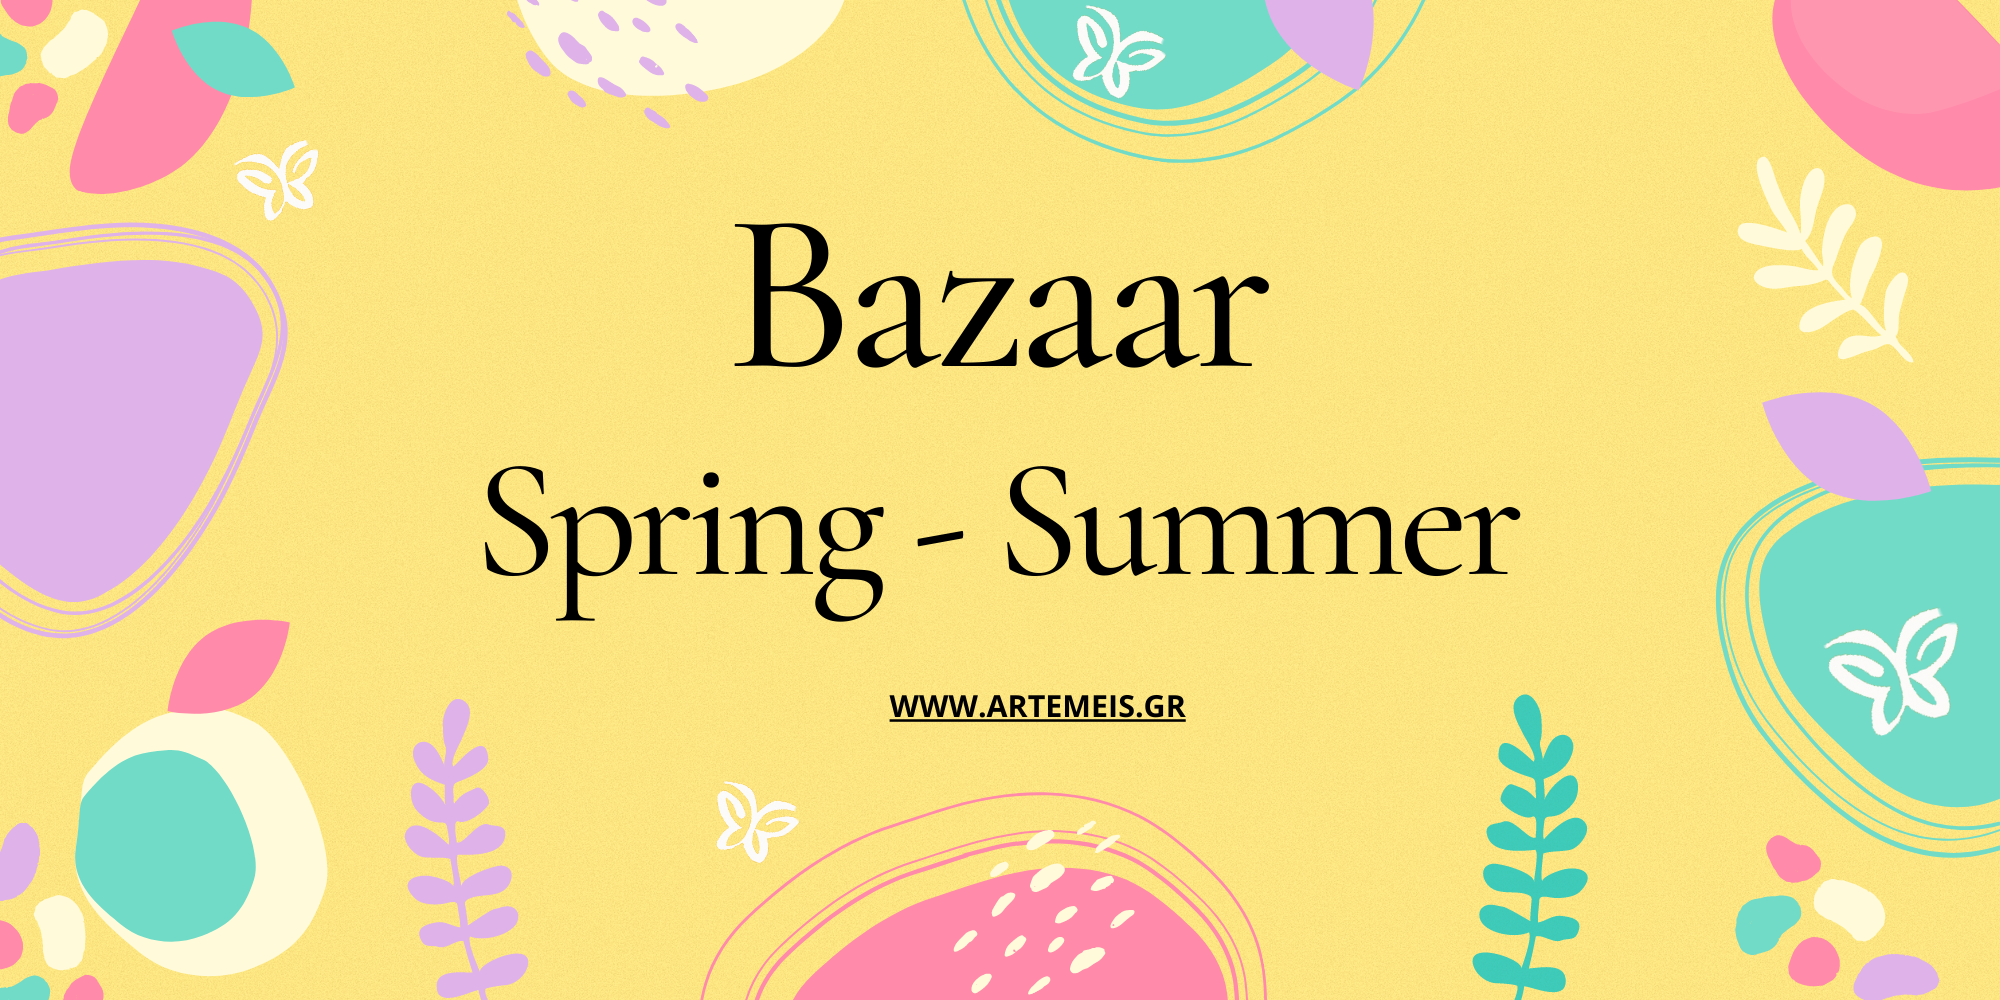 E Bazaar Spring - Summer Home